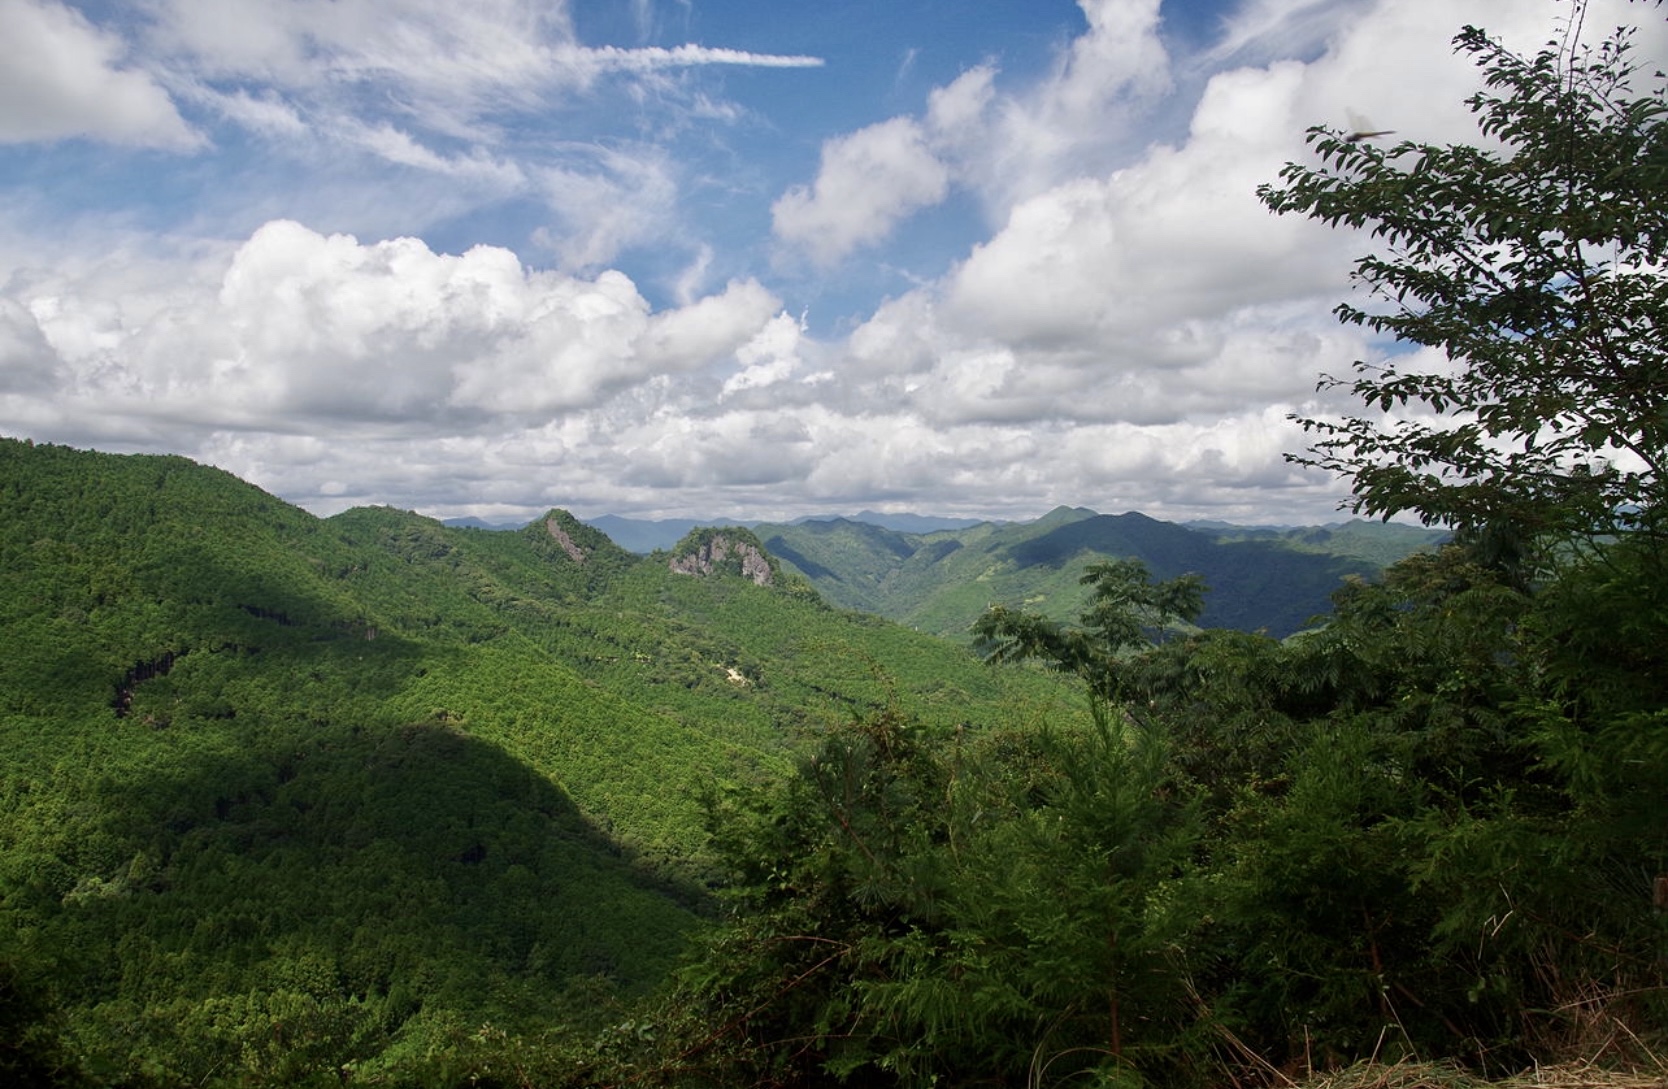   和歌山県東牟婁郡古座川町の山間部にある1万3000坪の眺望が特に良い山林です。 165万円(応相談)